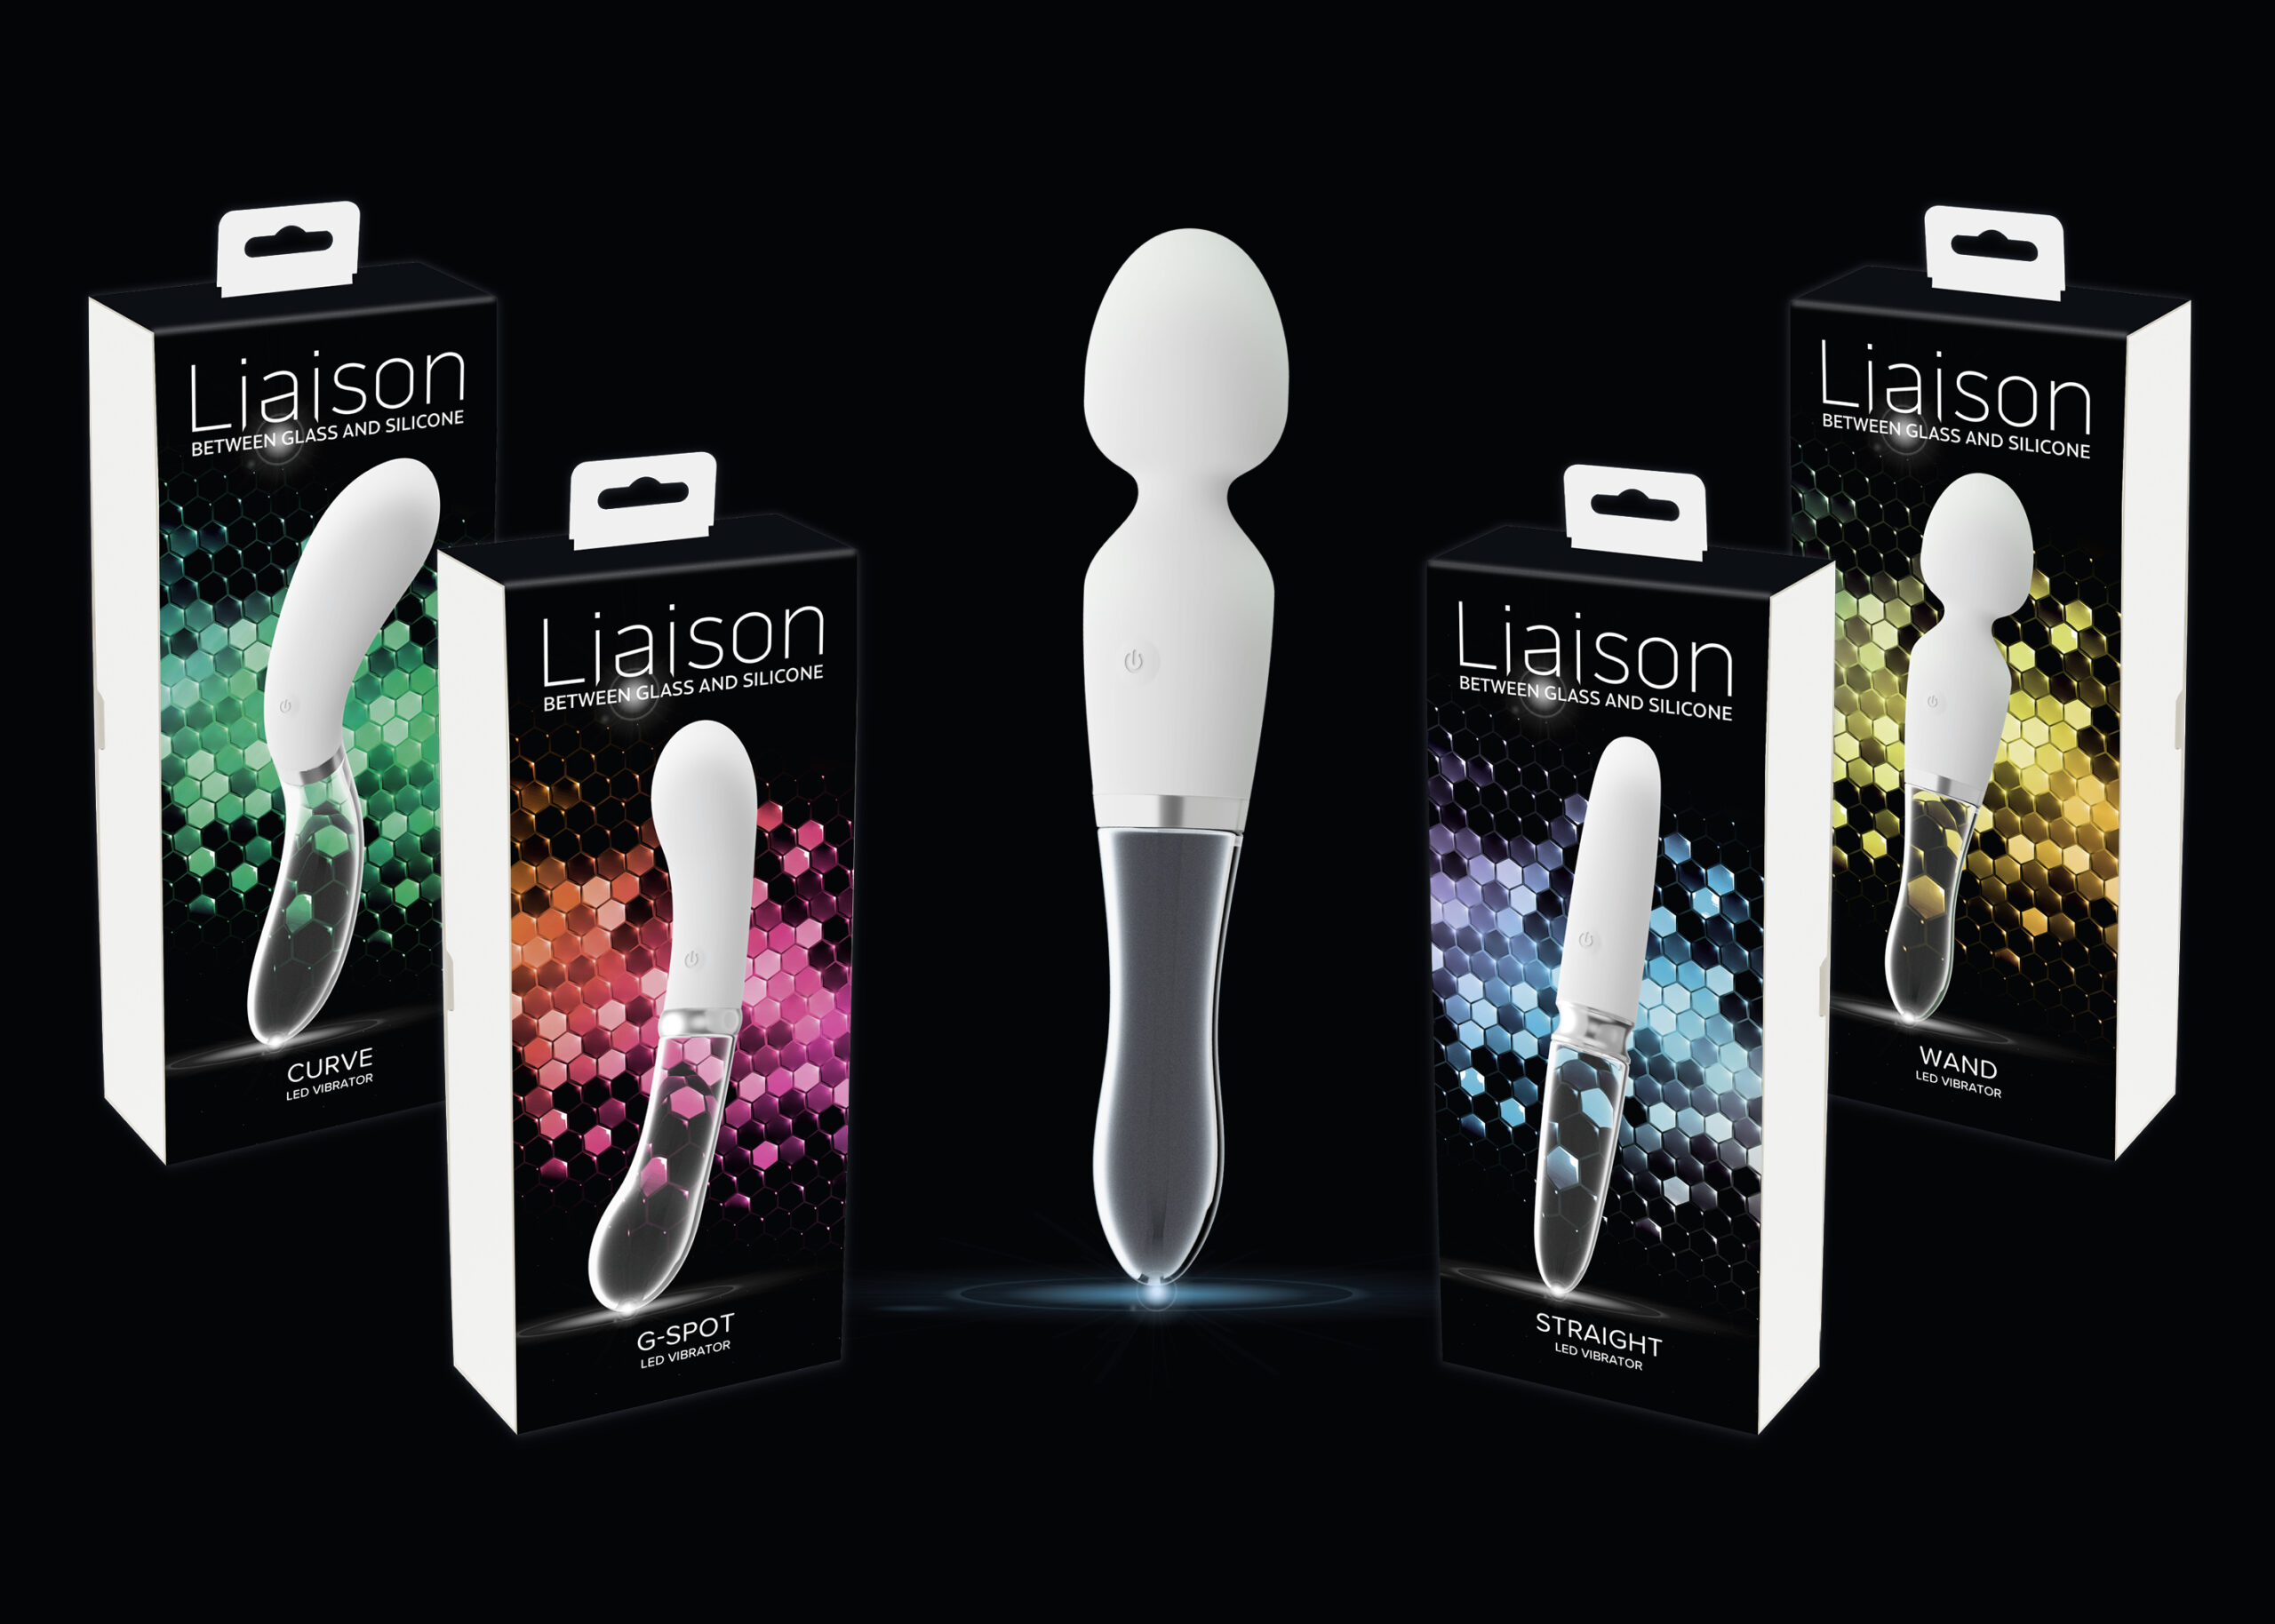 Liaison – Leistungsstarke Sextoys im Luxus-Design